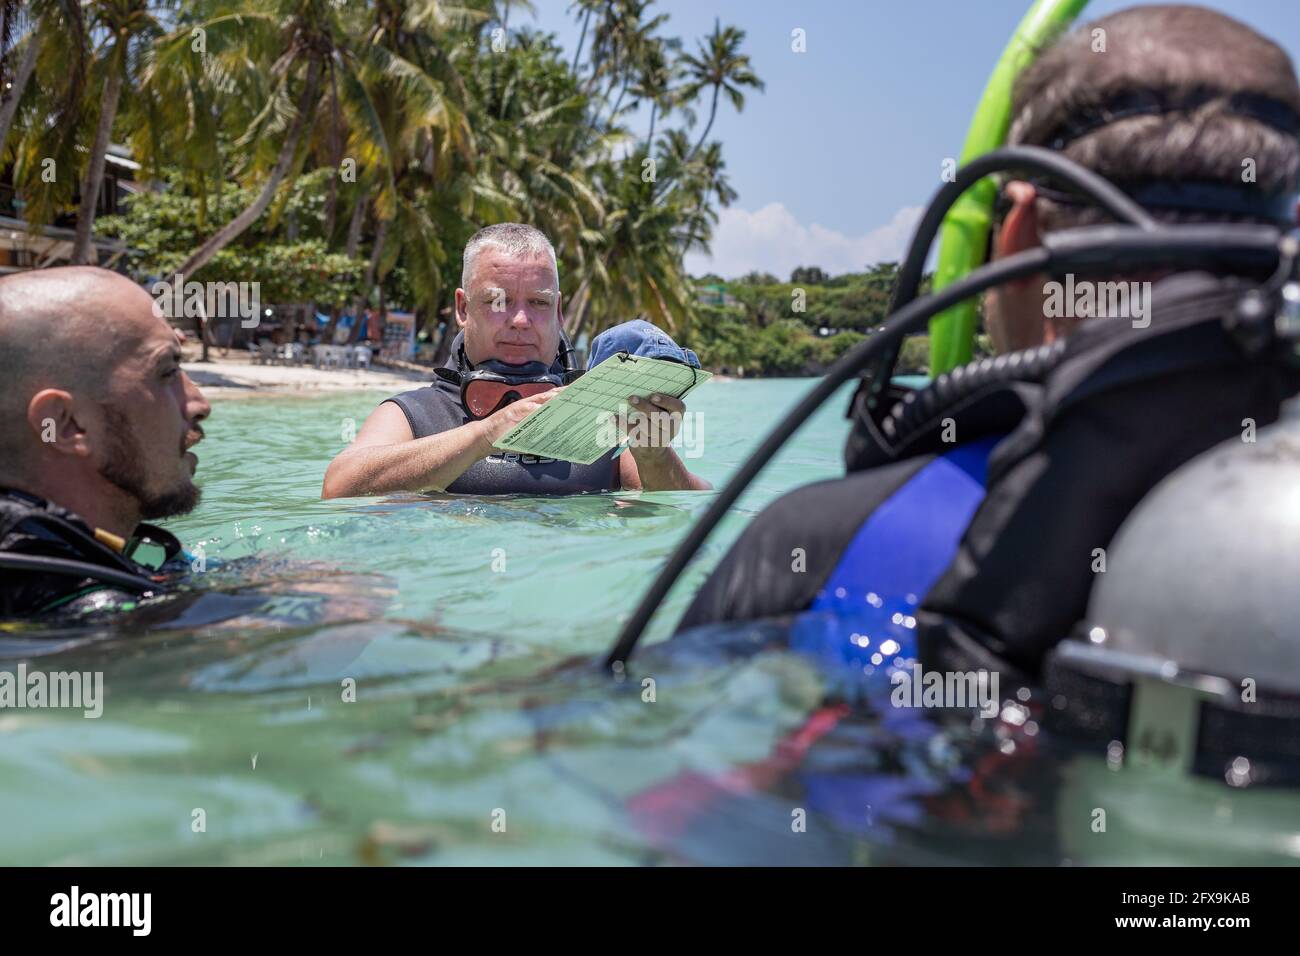 Panglao, Filippine - 29 aprile 2021: Subacqueo in acque confinate insegnare, studiare, valutare le competenze Foto Stock